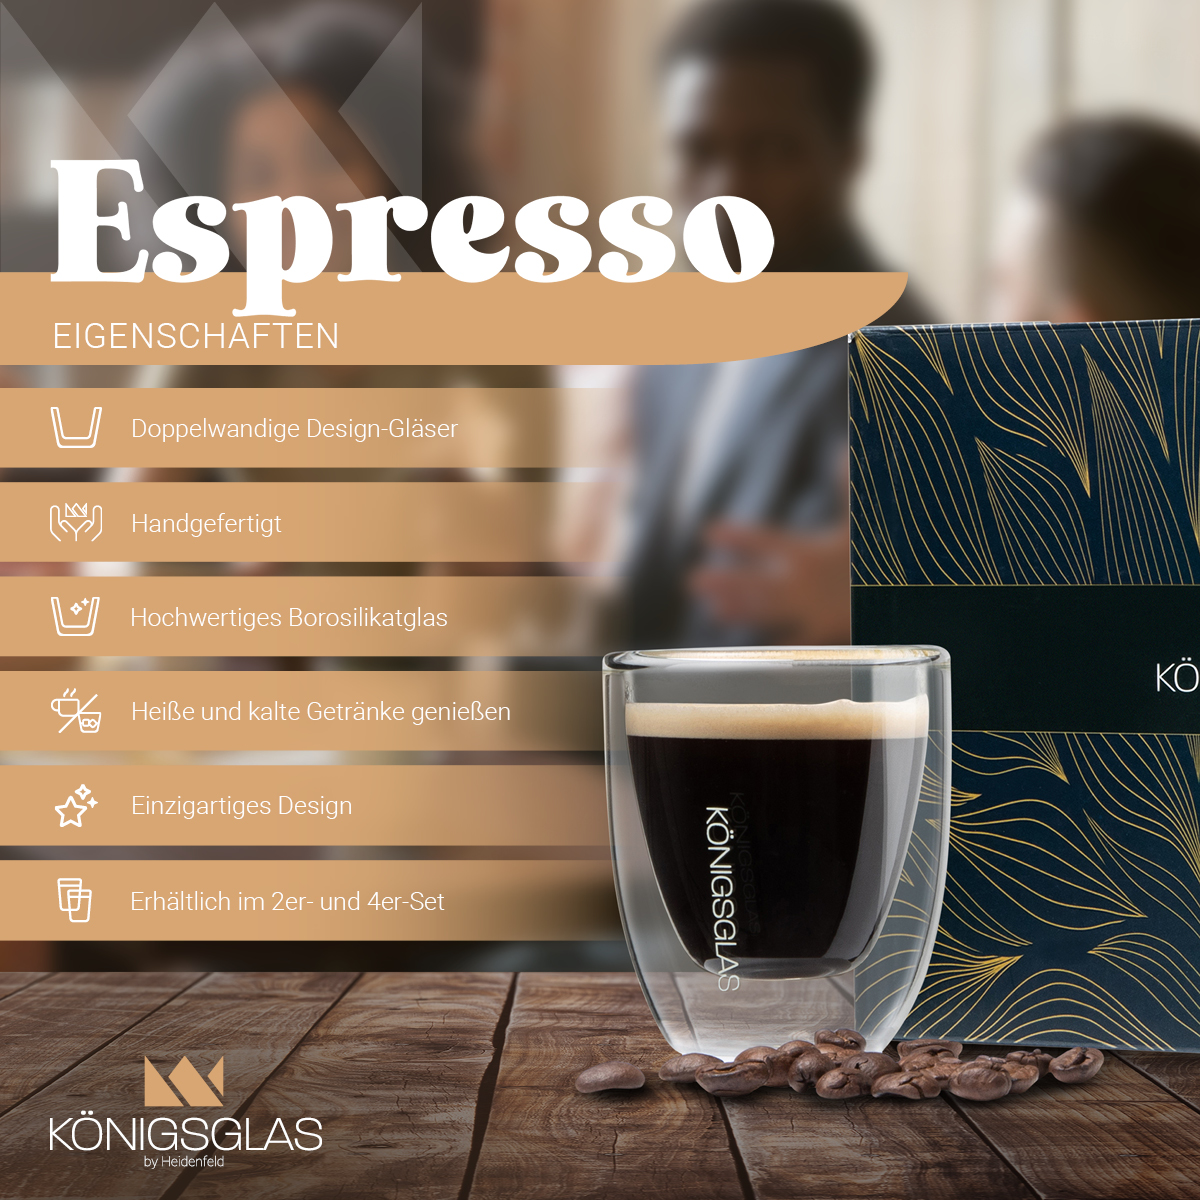 HEIDENFELD Königsglas 80 Kaffeegläser 4x ml Espresso